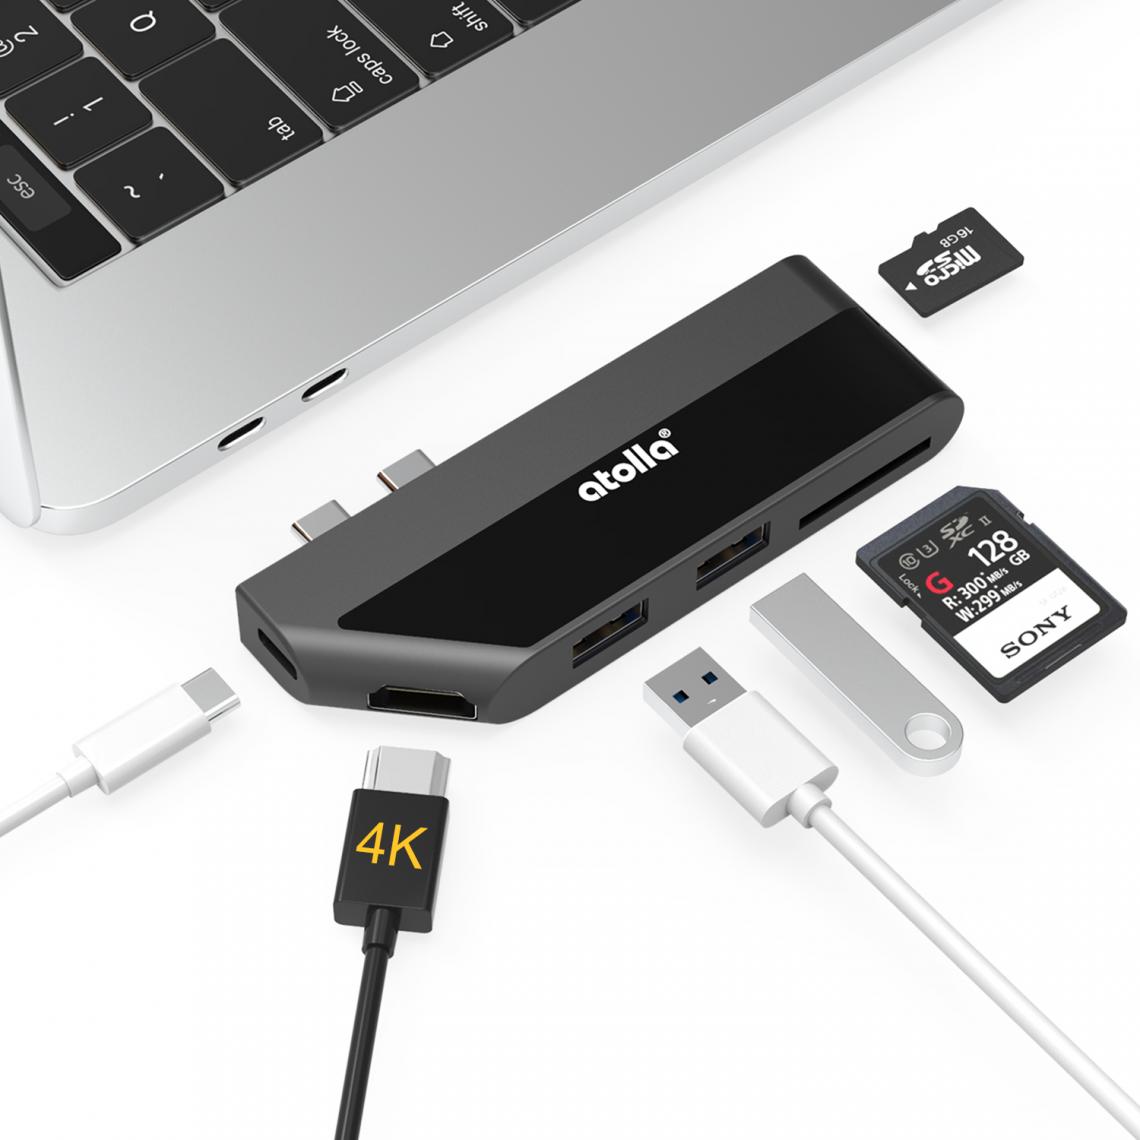 Atolla - Atolla Hub USB C, Adaptateur USB C vers Thunderbolt 3 pour Macbook, 4K HDMI, PD 100W, 2 Ports USB 3.0, Lecteur de Carte SD/TF - Hub